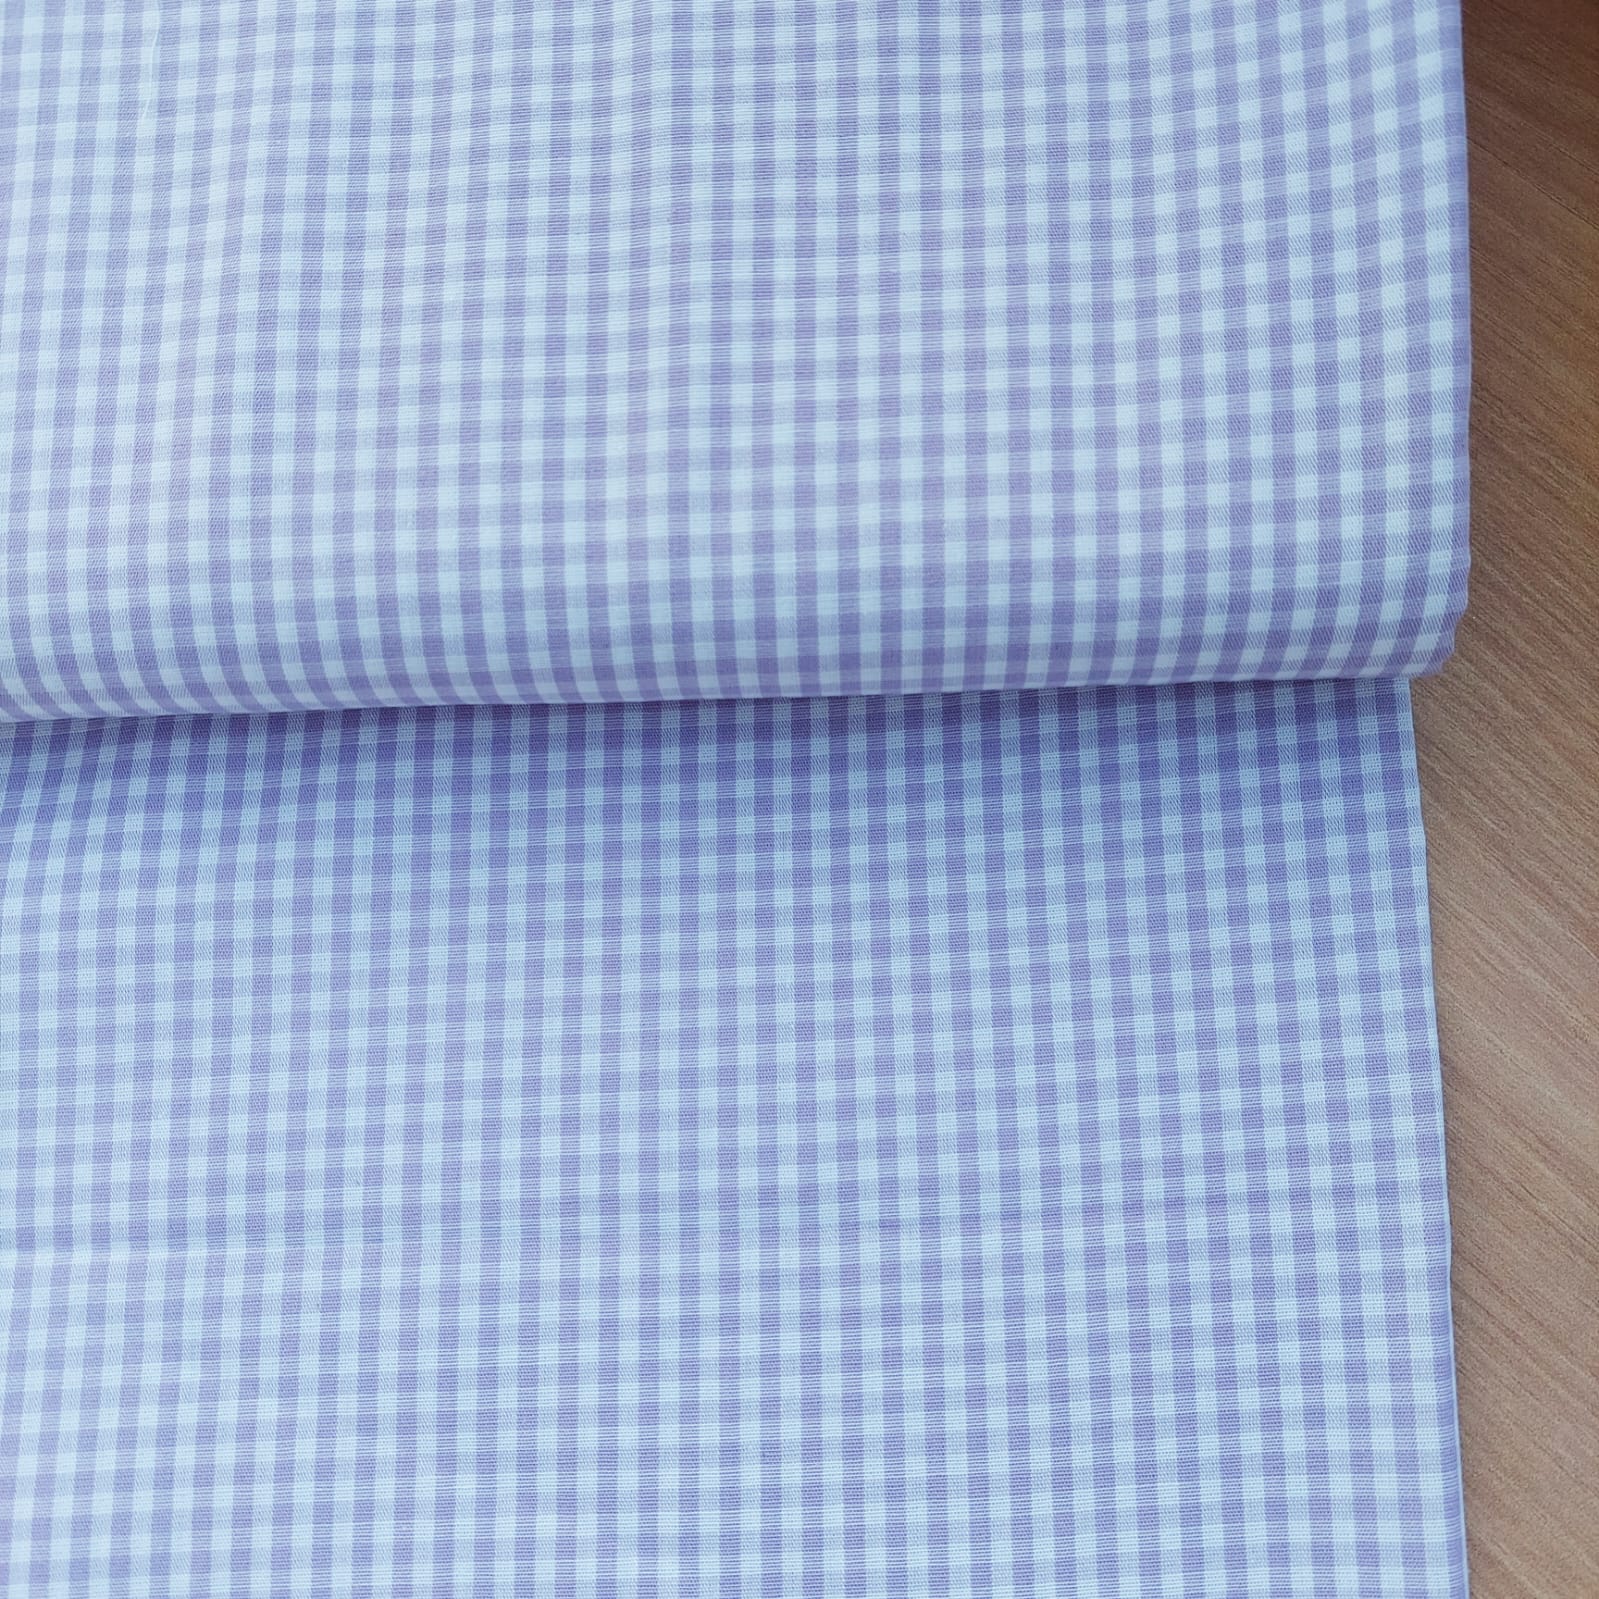 Marilinhas Tecidos – Tricoline - costura criativa - Tecidos em Santos -  tecido fio tinto